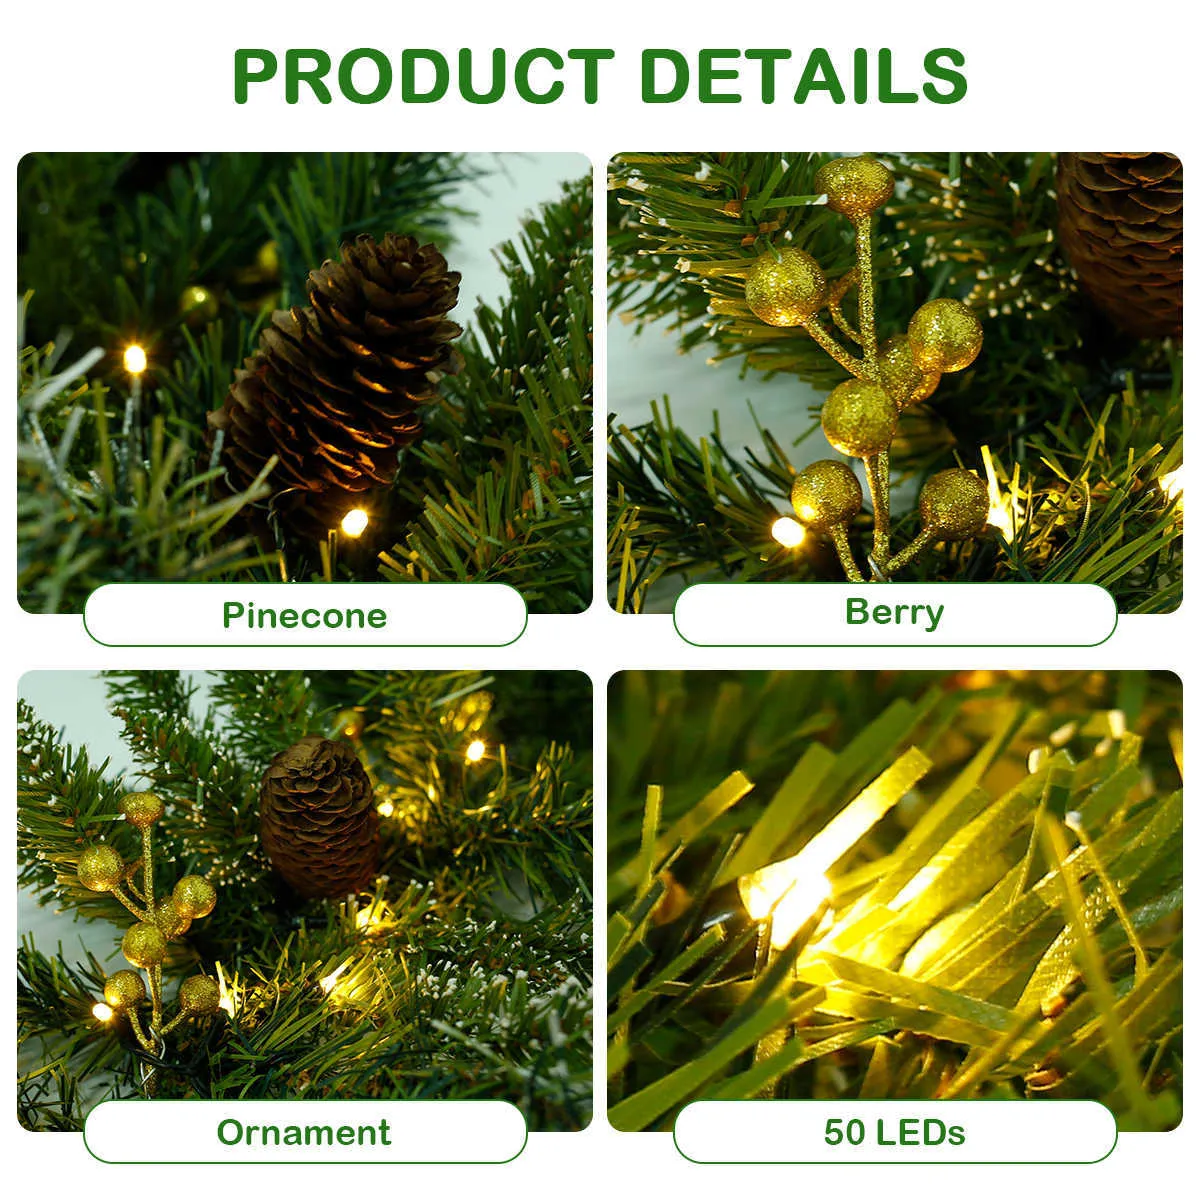 1.8 / 2.7m Kolorowe Boże Narodzenie Kominek Garland Wieniec Pine Tree Ornament Choinki DIY Wiszące Rattan Garlands Decoration 211012